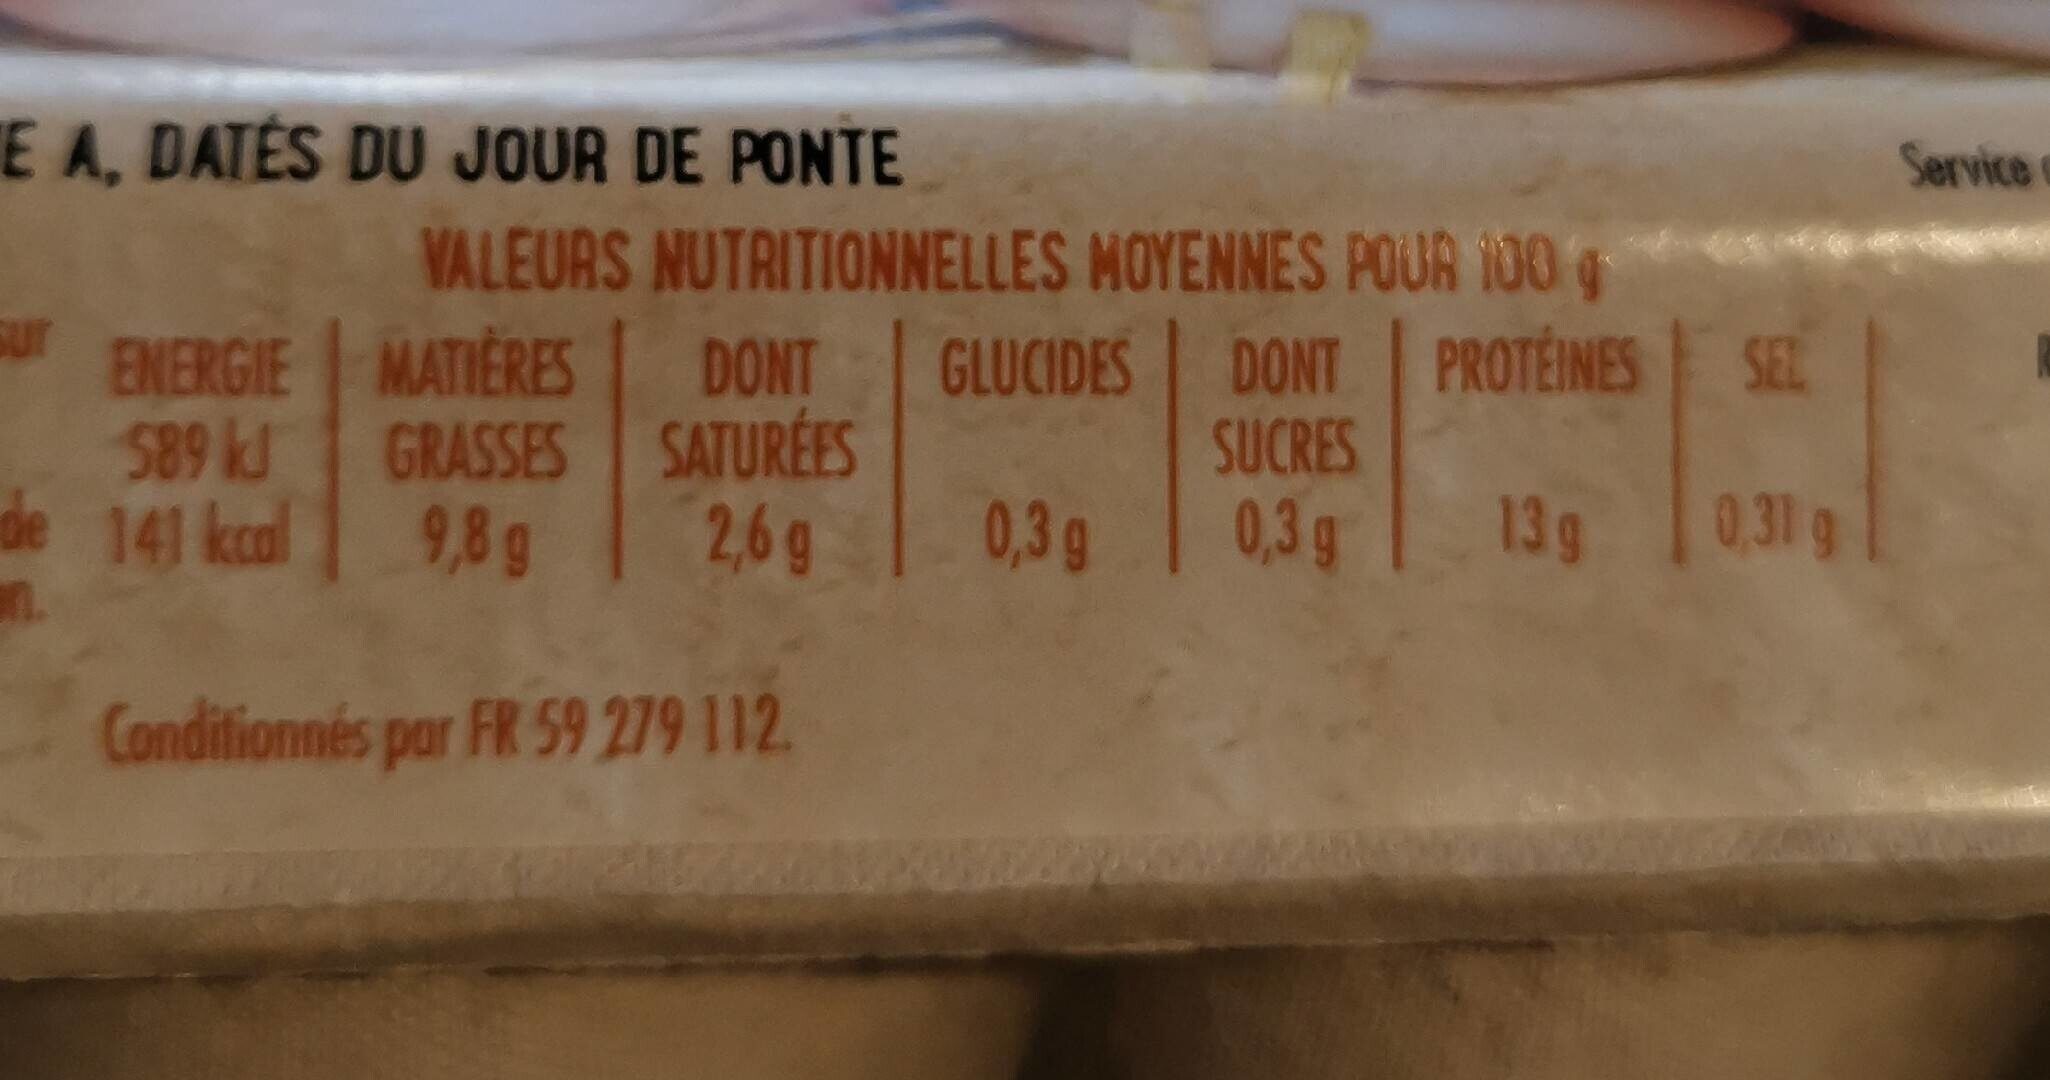 12 oeufs frais MOYEN DATÉS DU JOUR DE PONTE - Nutrition facts - fr